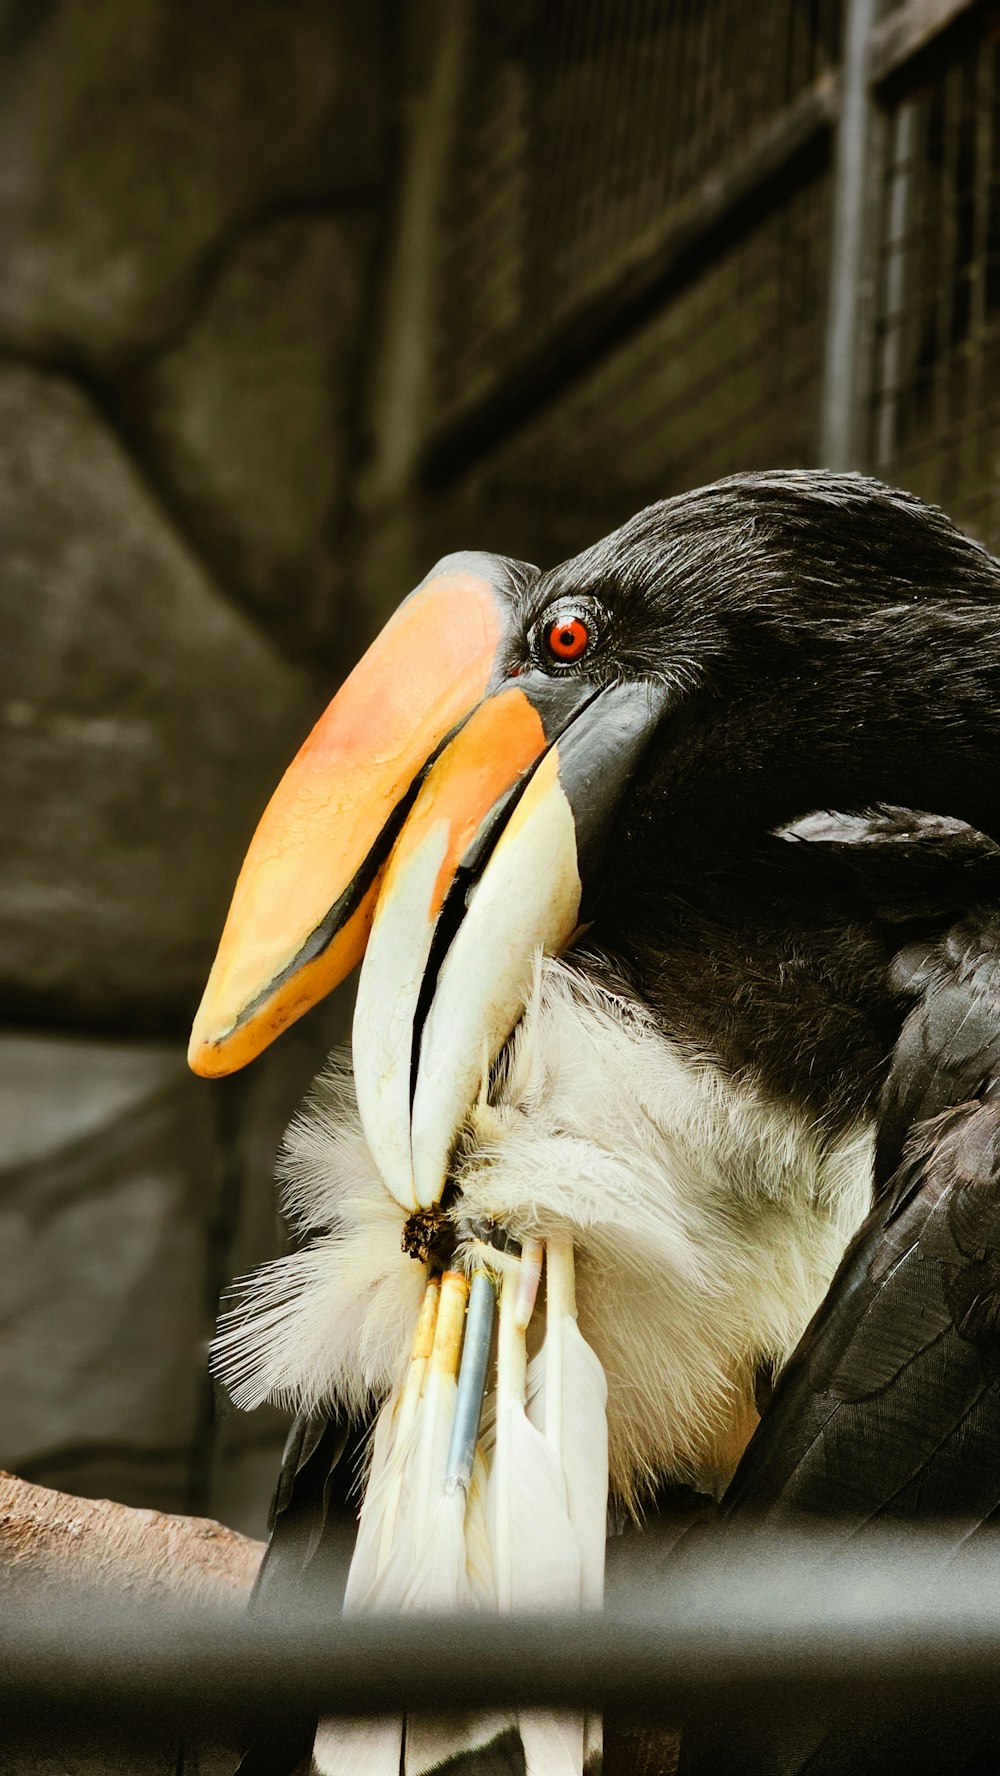 a close up of a bird with a large beak